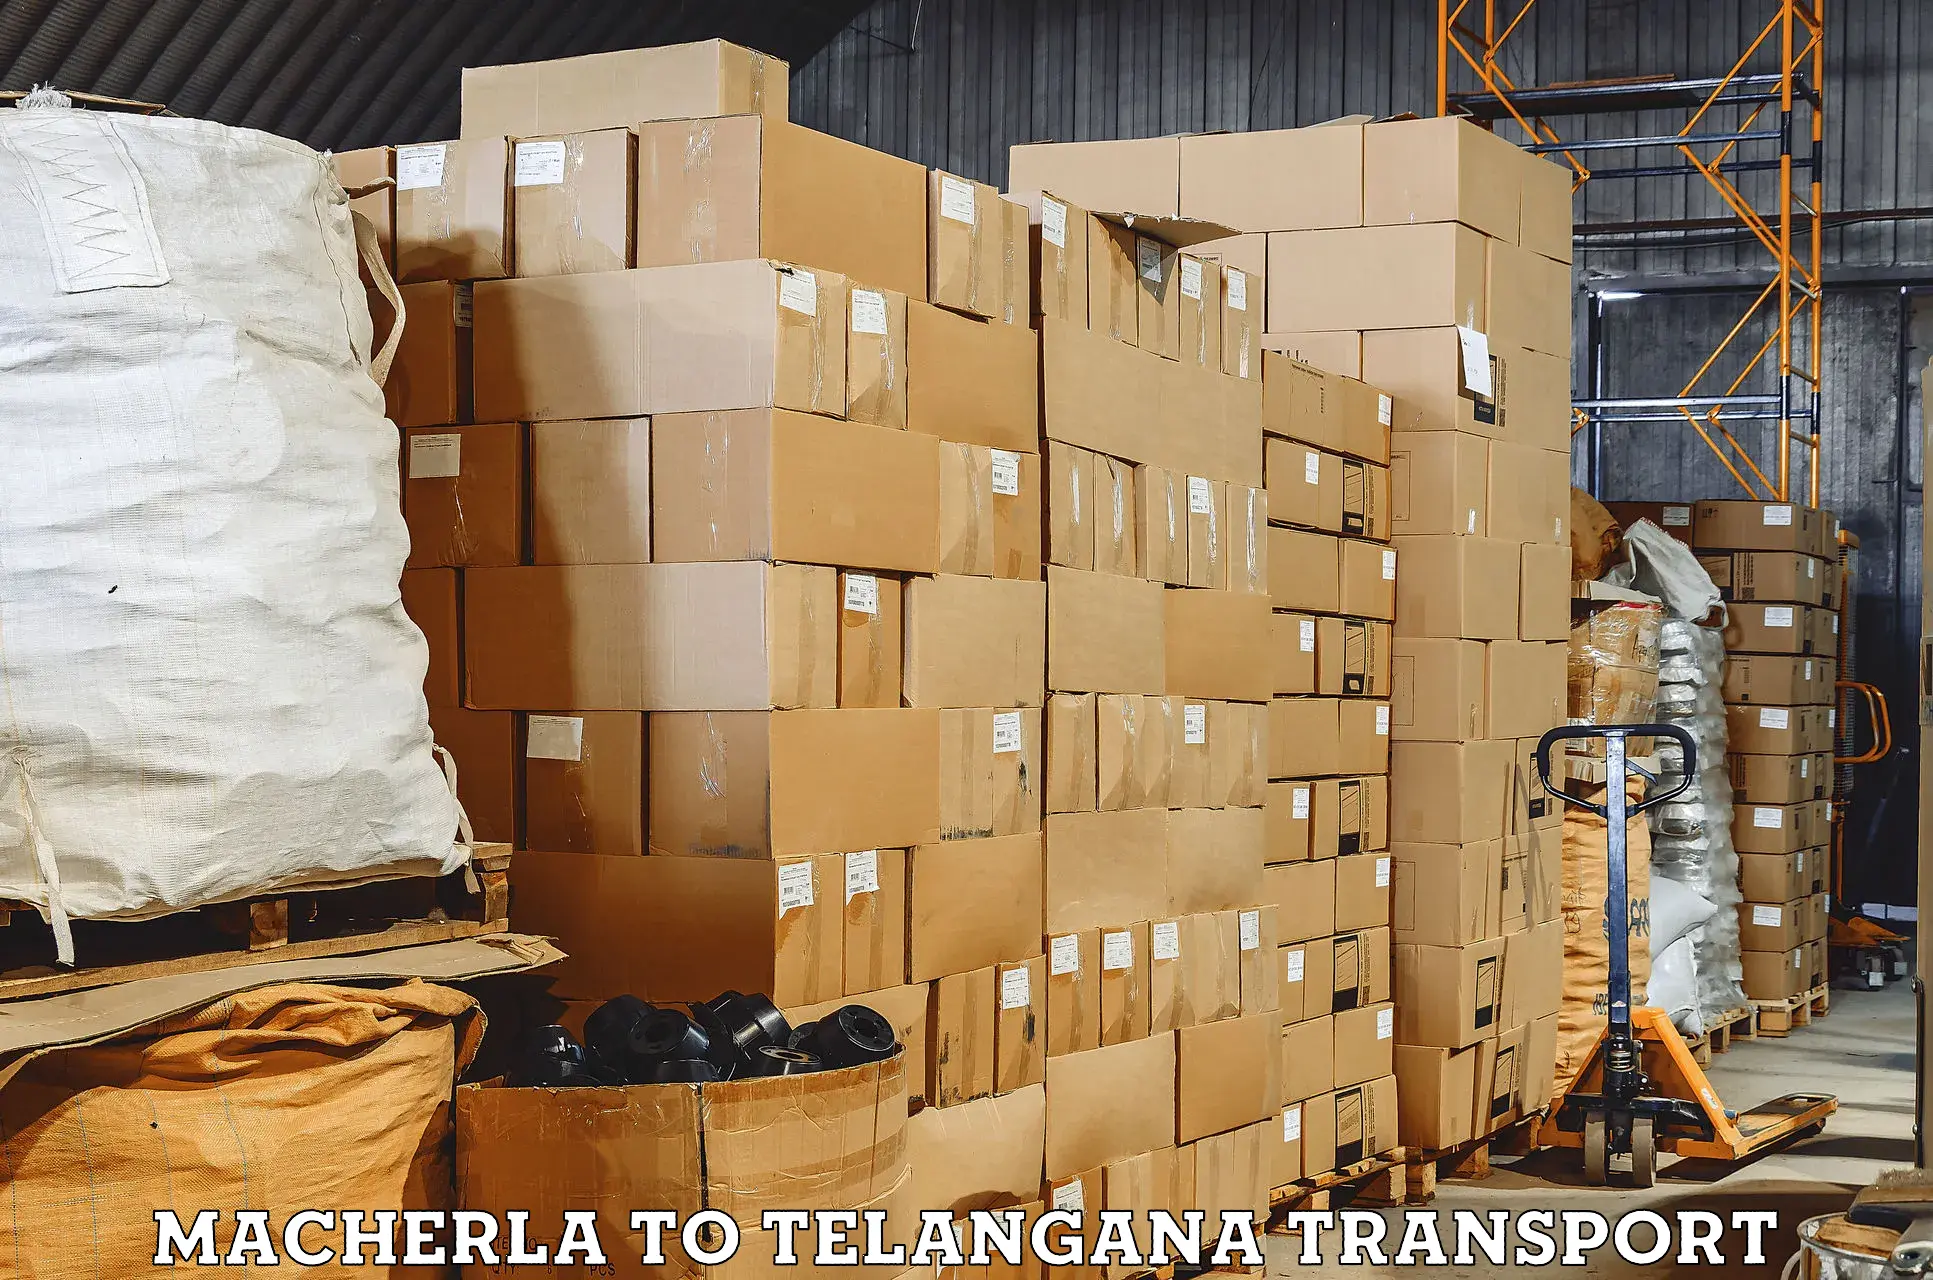 Online transport service Macherla to Danthalapally